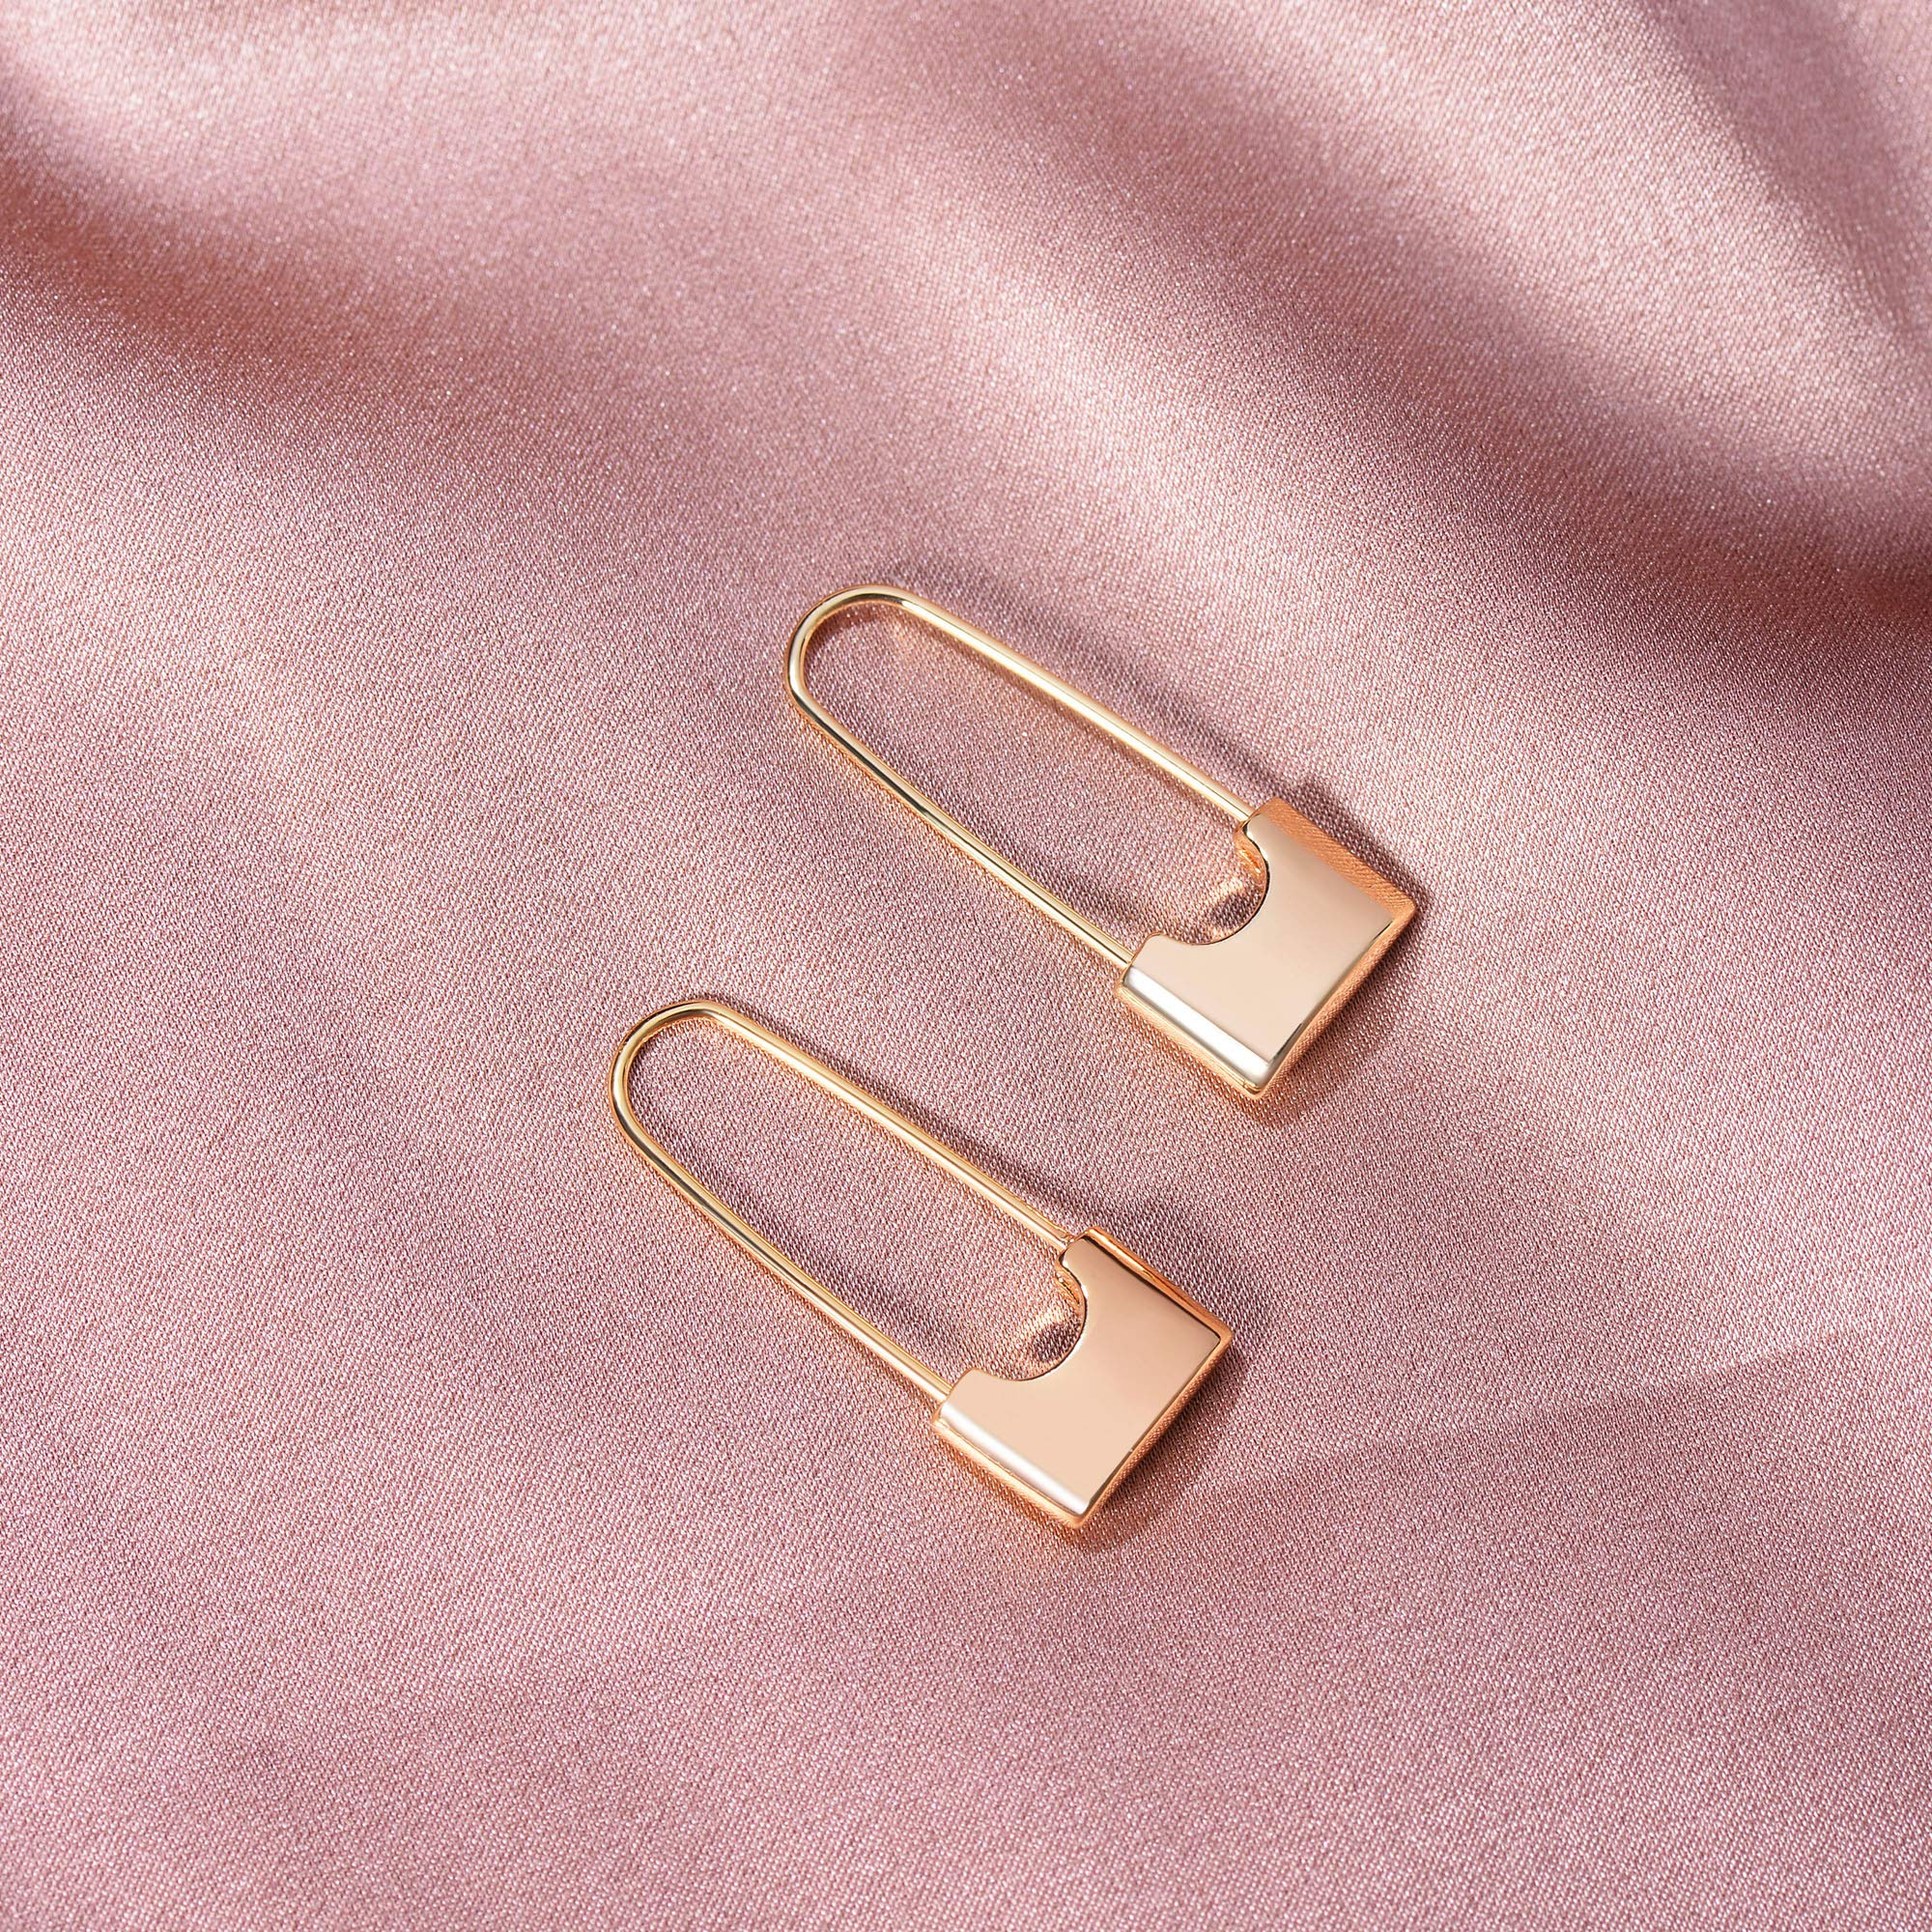 MEVECCO Tiny Cross Hoop Earrings 14K Gold Plated Dainty Minimalist Simple Faith Cross Dangle Huggie Earrings For Women Girls Jewelry Gift